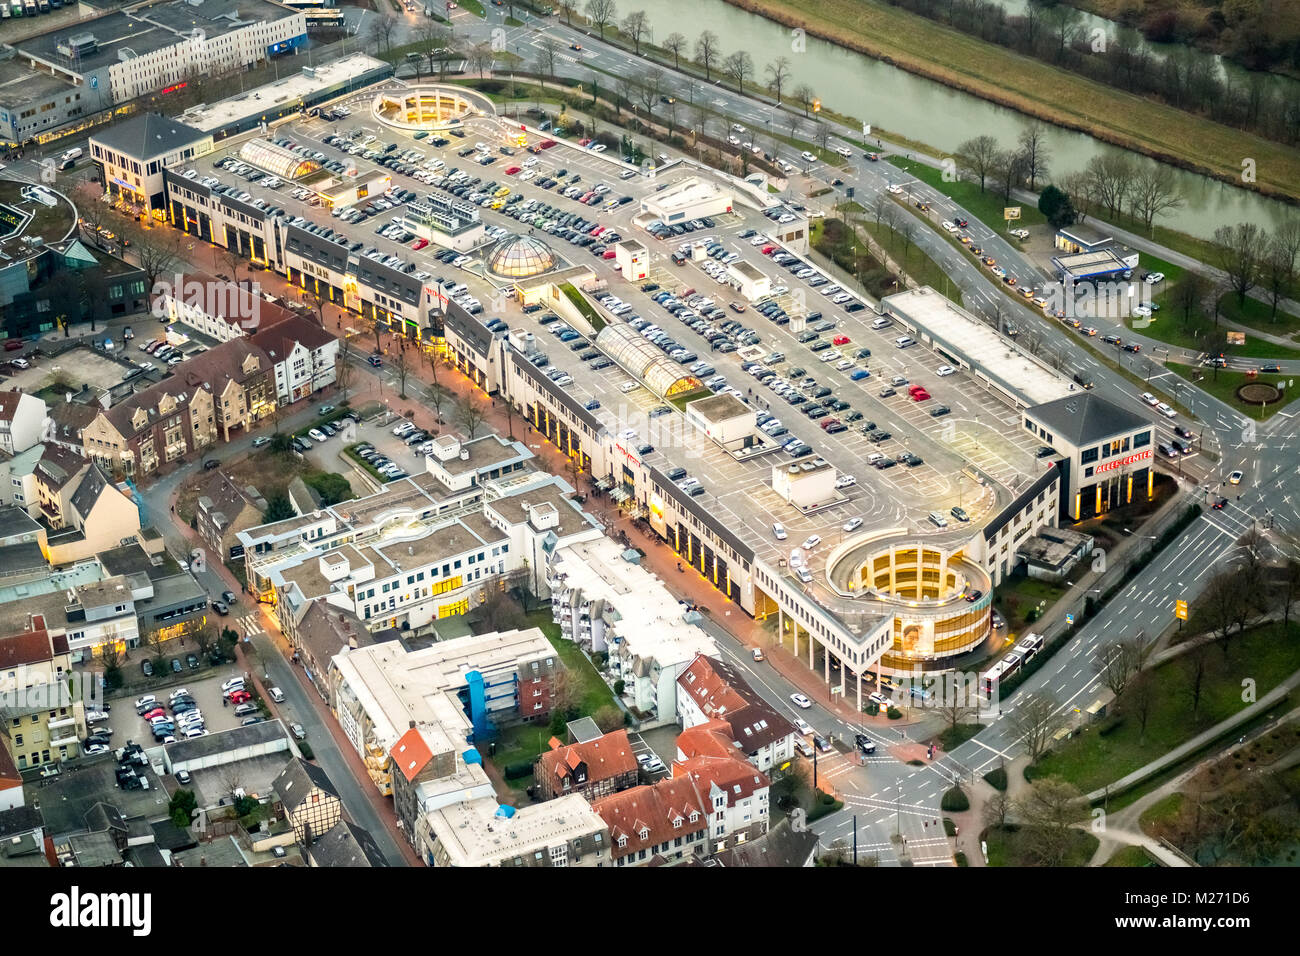 Downtown Hamm, shopping center, Allee Center Hamm, Datteln-Hamm canal, Ritterpassage, Hamm, Ruhr, Nordrhein-Westfalen, Germany, UK, Europe, aerial vie Stock Photo